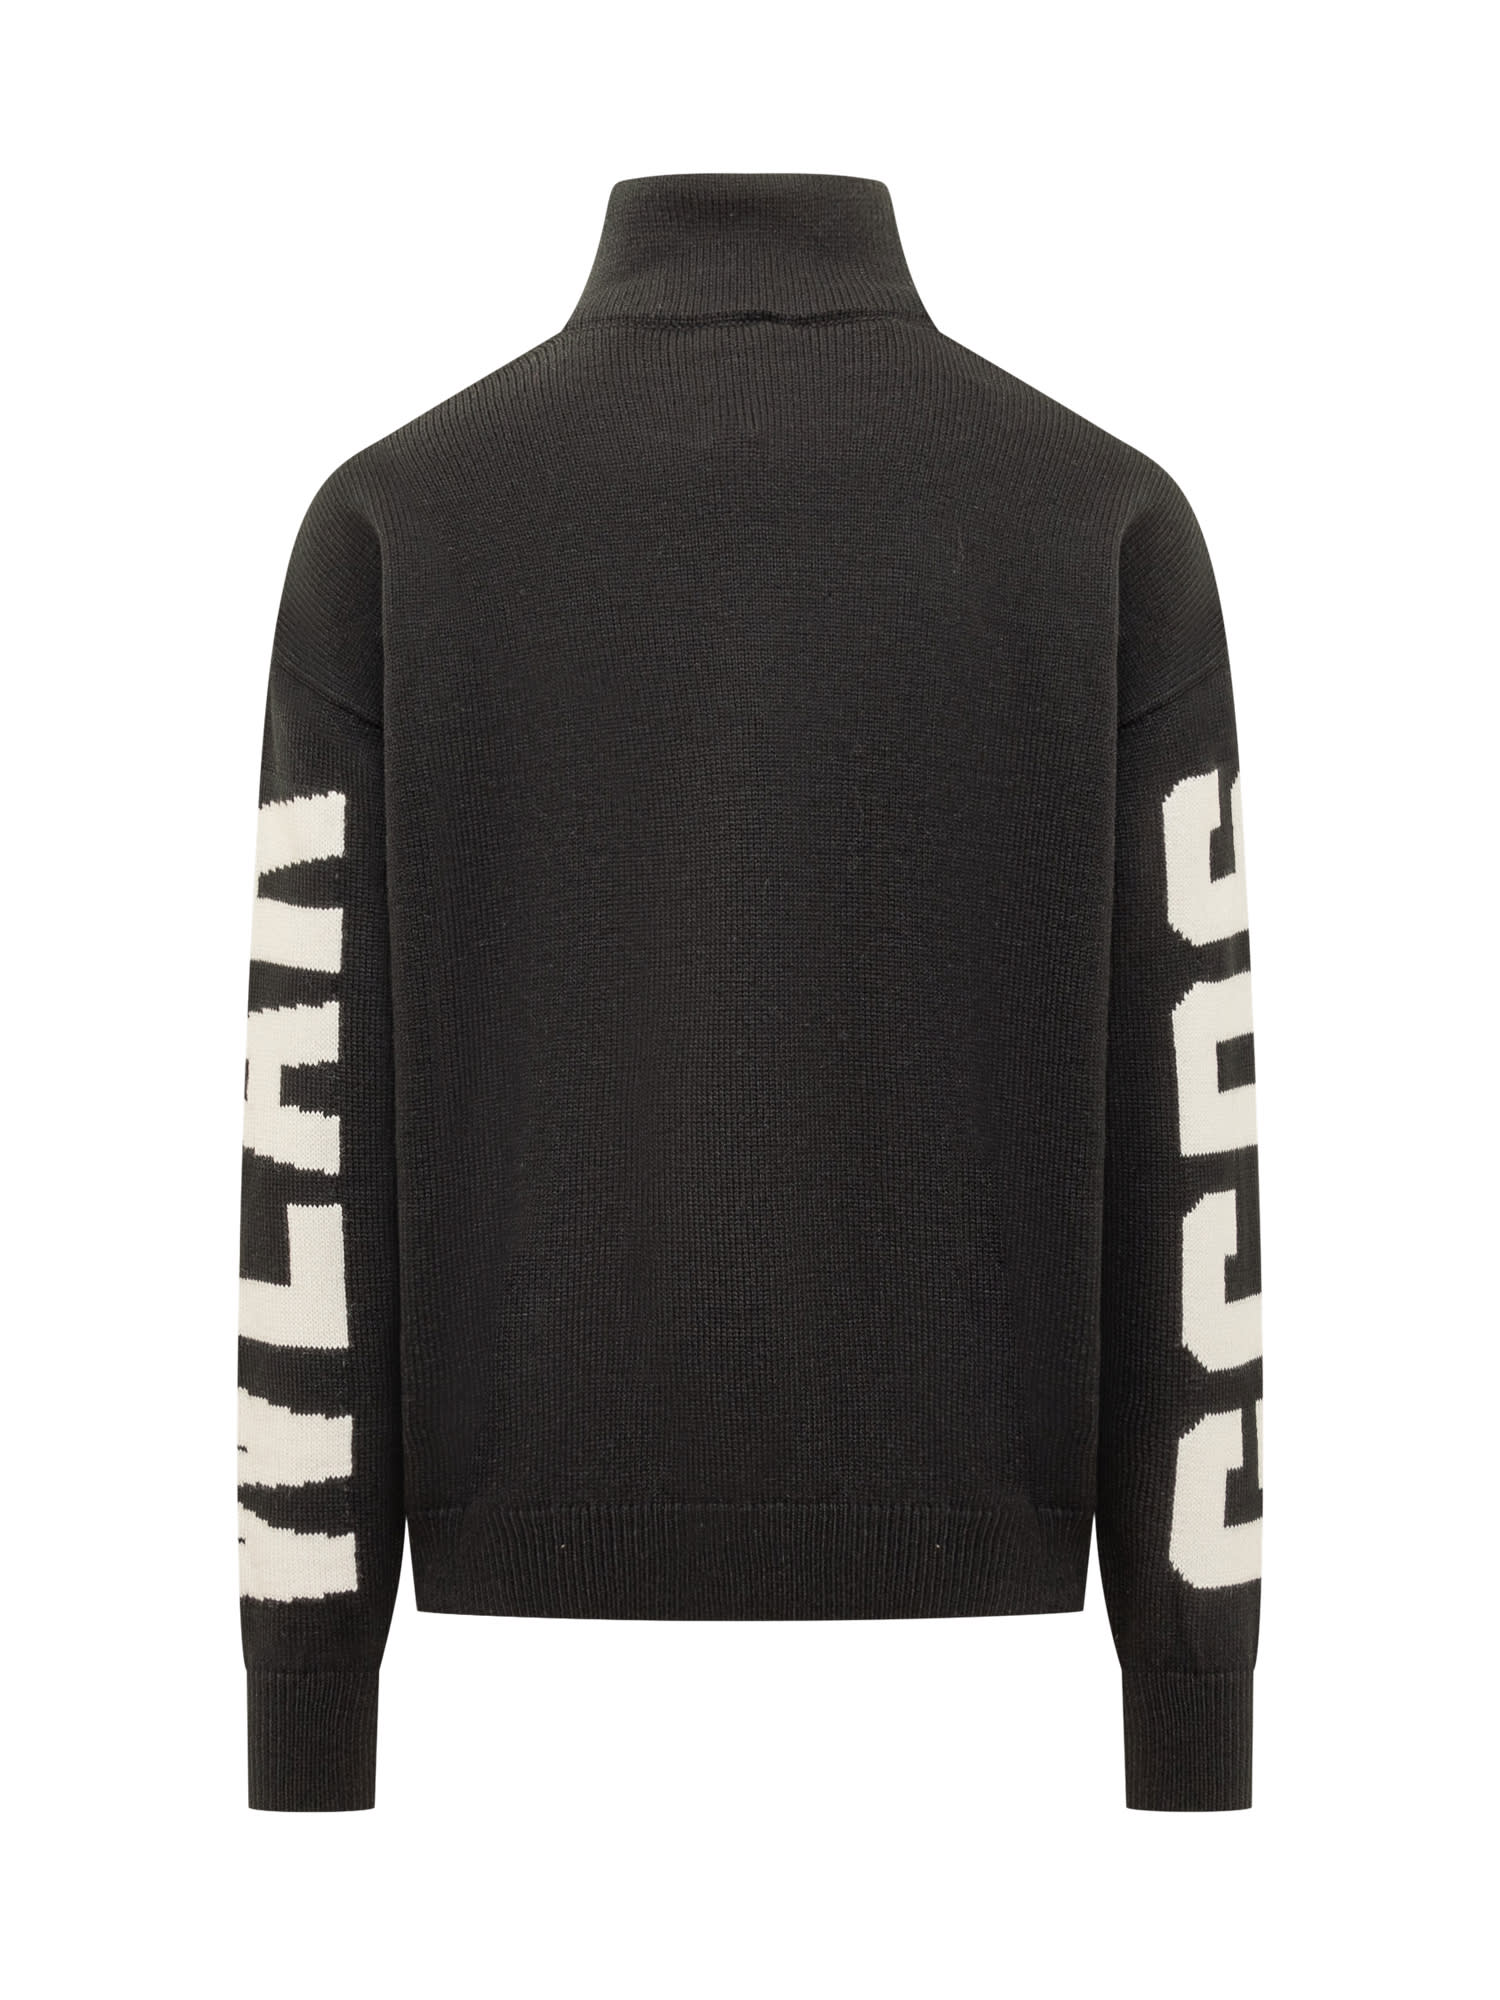 Shop Gcds Turtleneck Sweater In Black